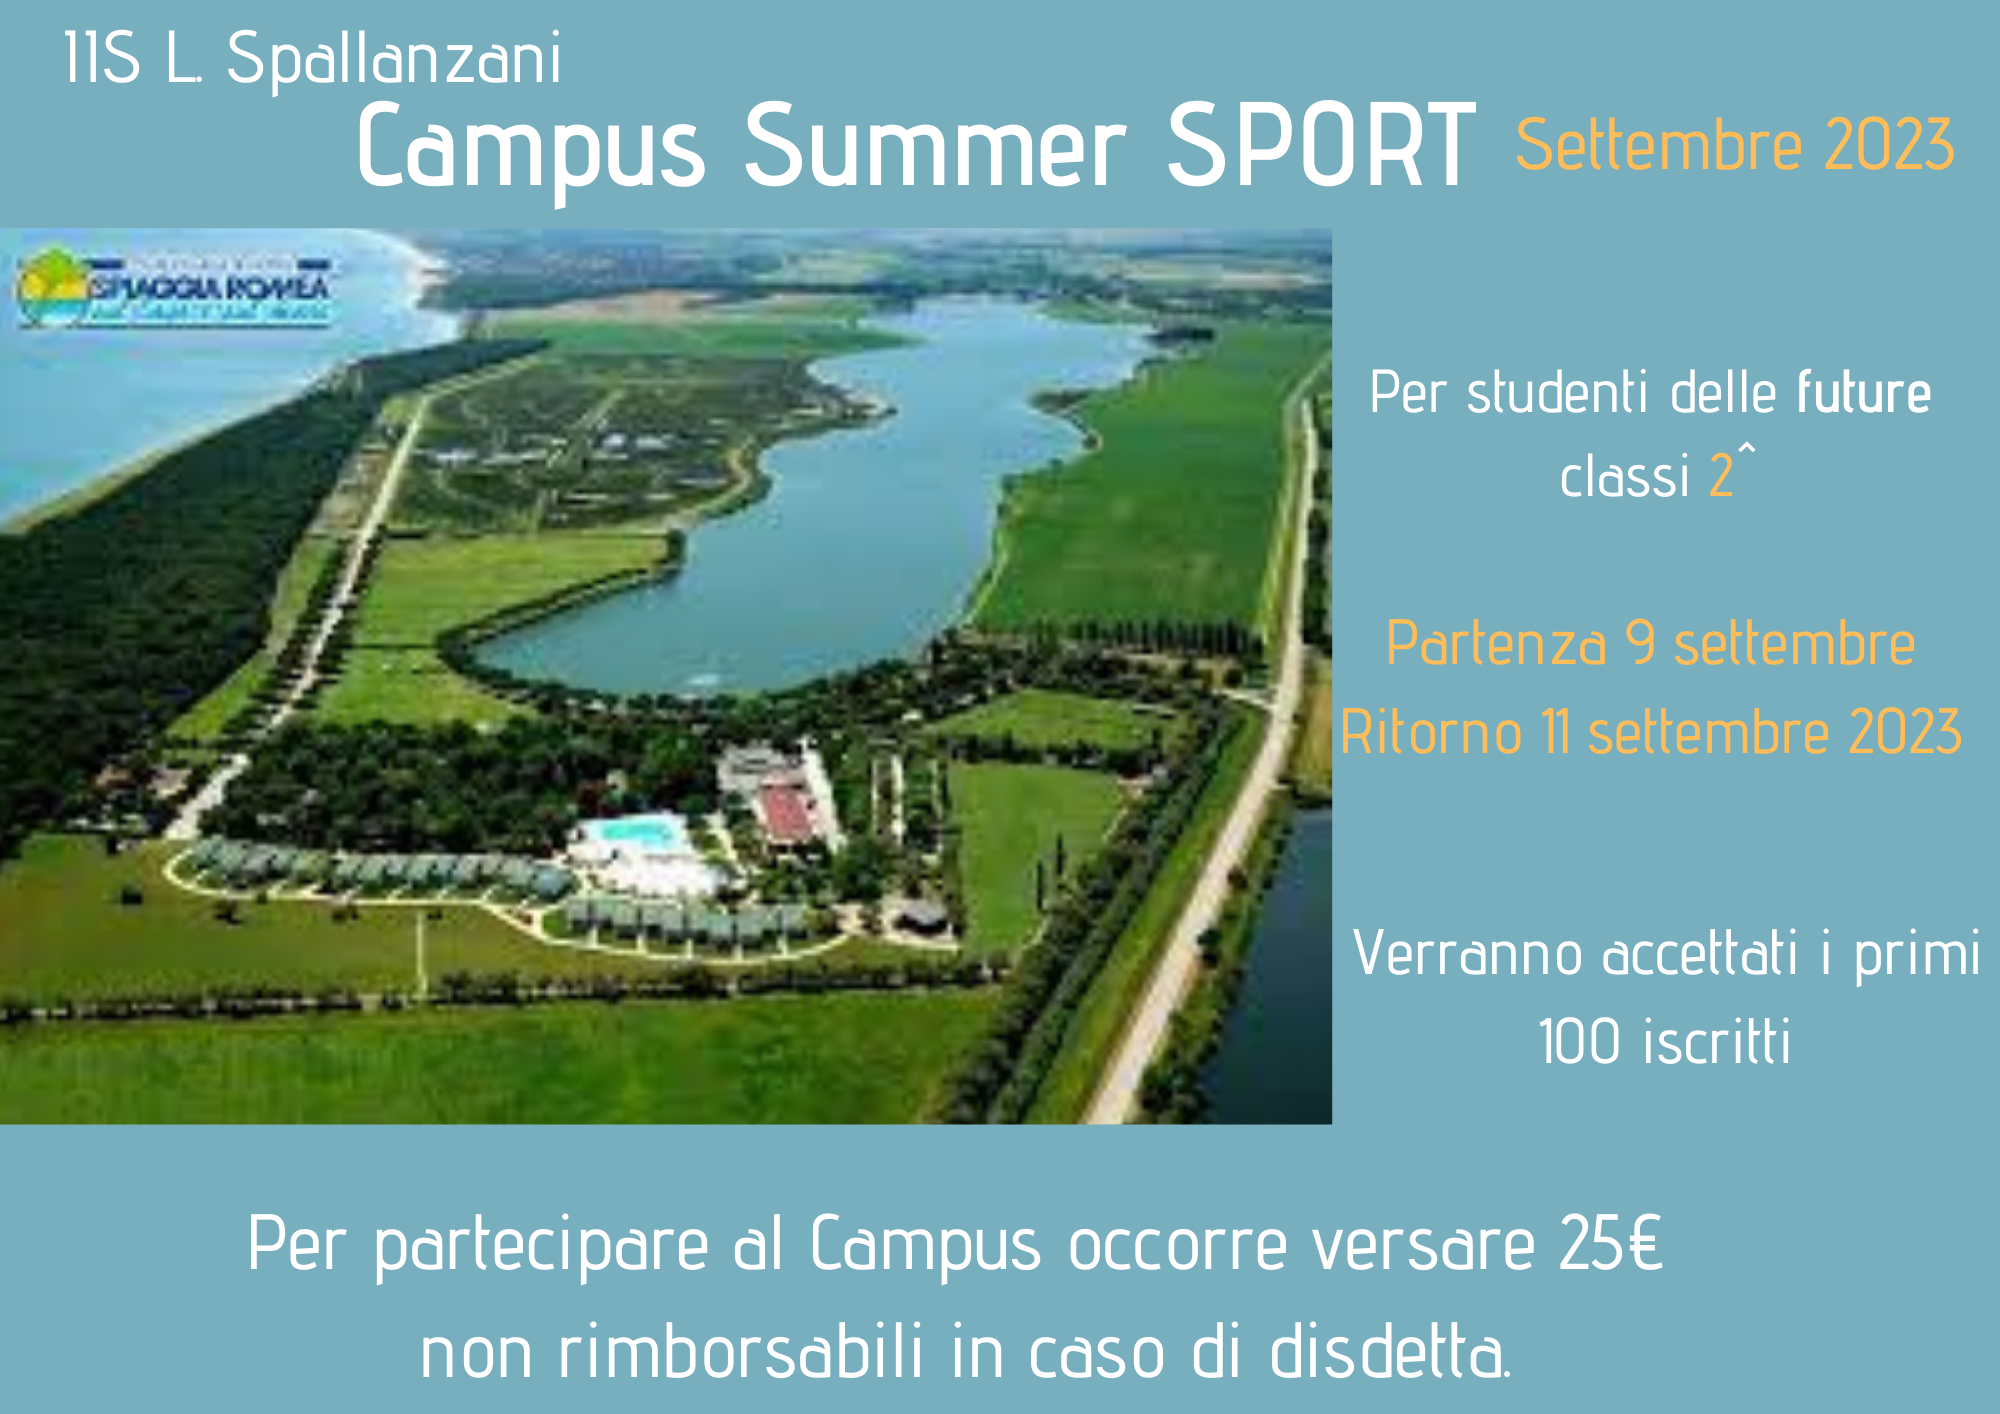 Istituto di Istruzione Superiore Lazzaro Spallanzani | Summer Camp settembre 2023